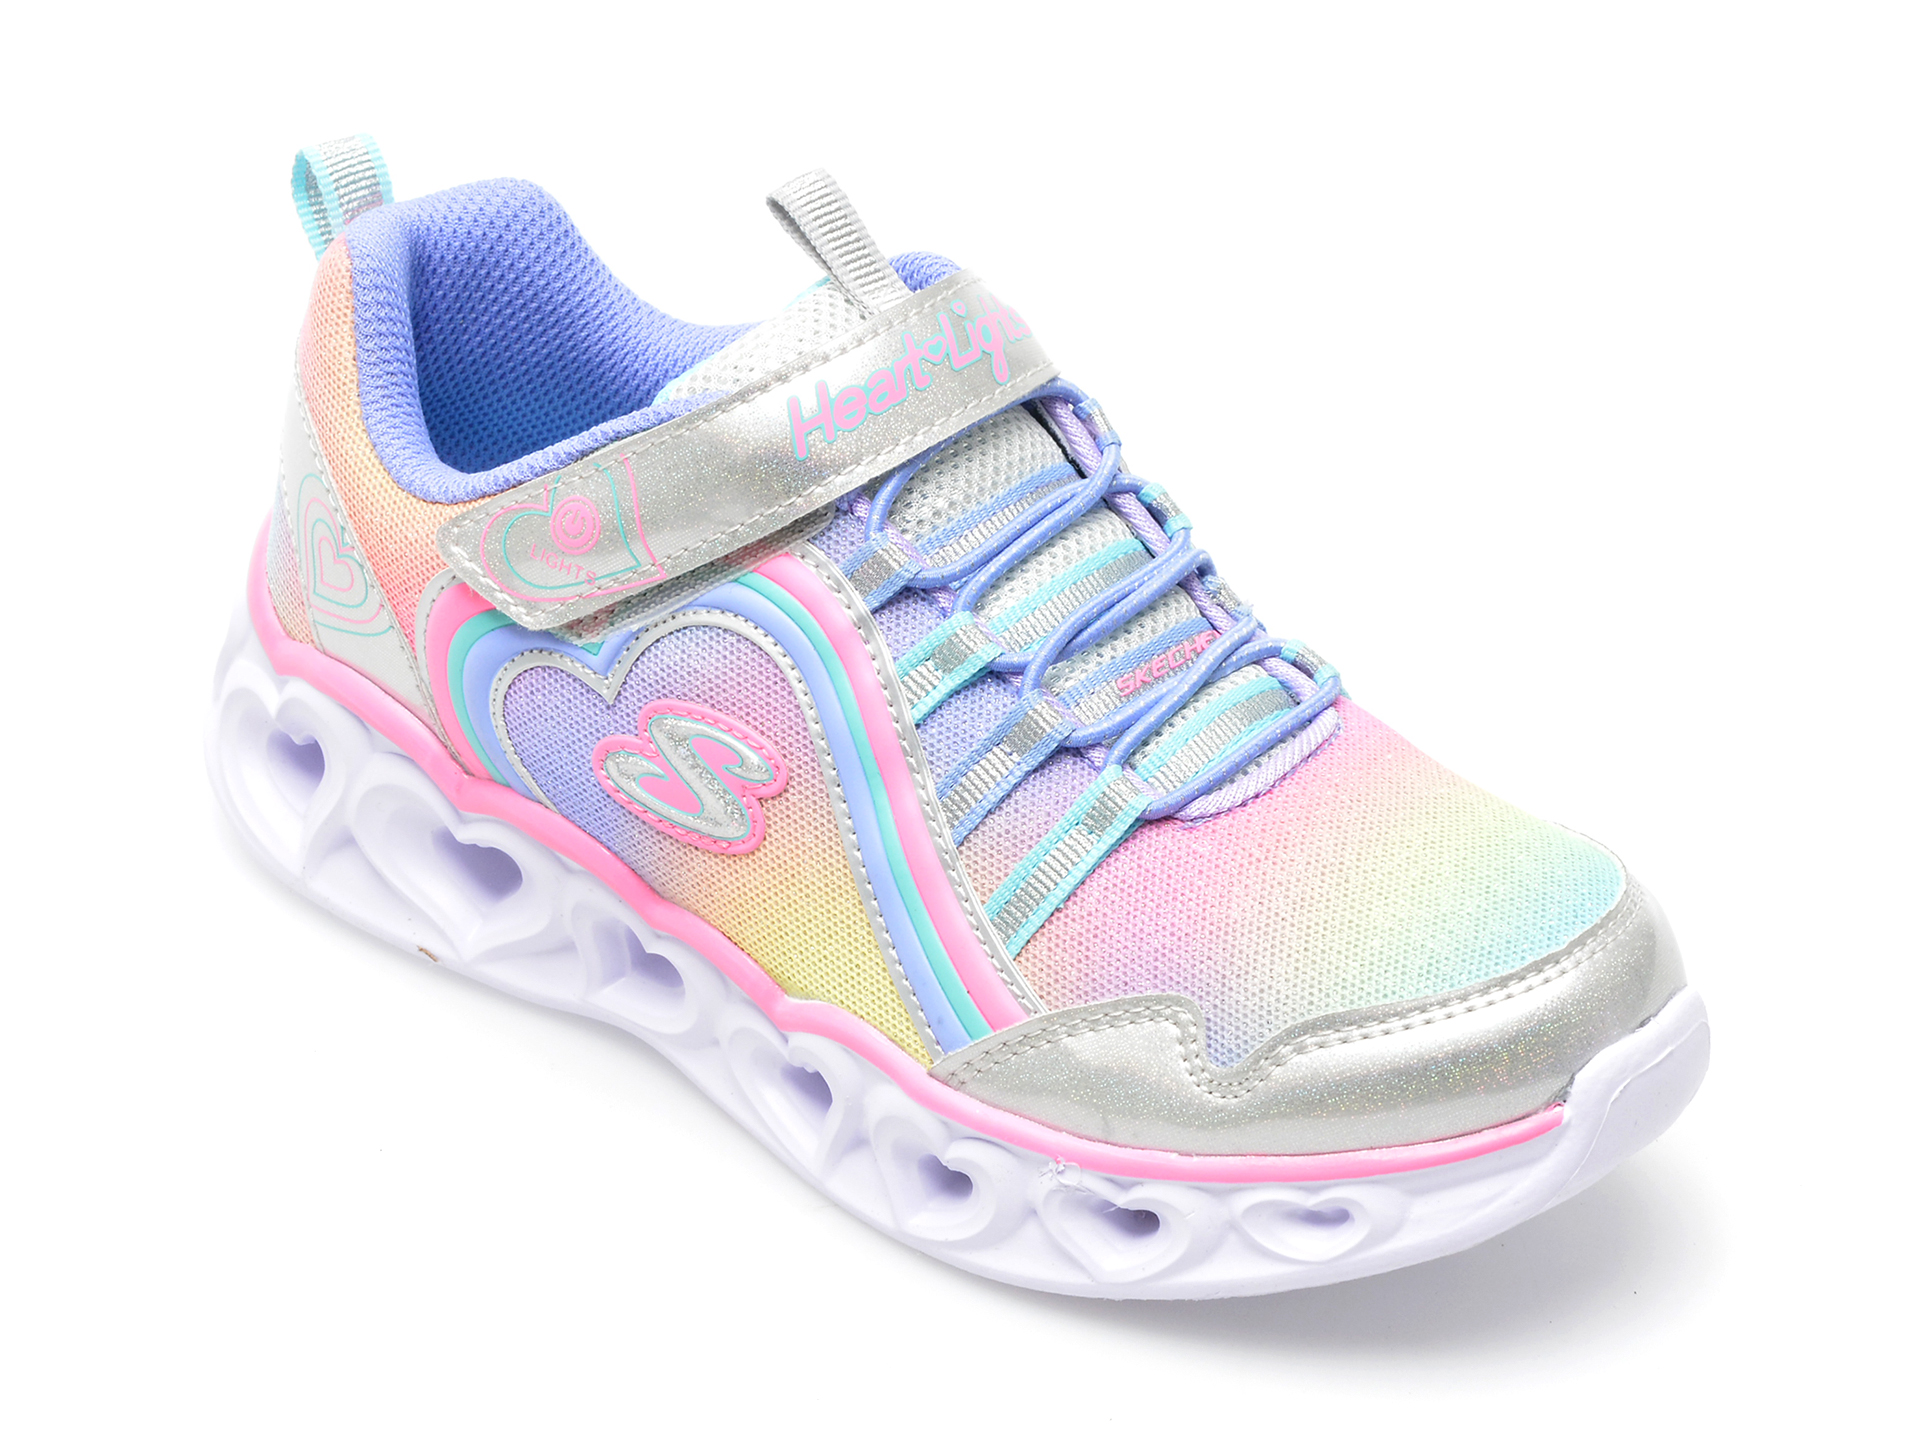 Pantofi sport SKECHERS multicolor, HEART LIGHTS, din material textil si piele ecologica /copii/incaltaminte